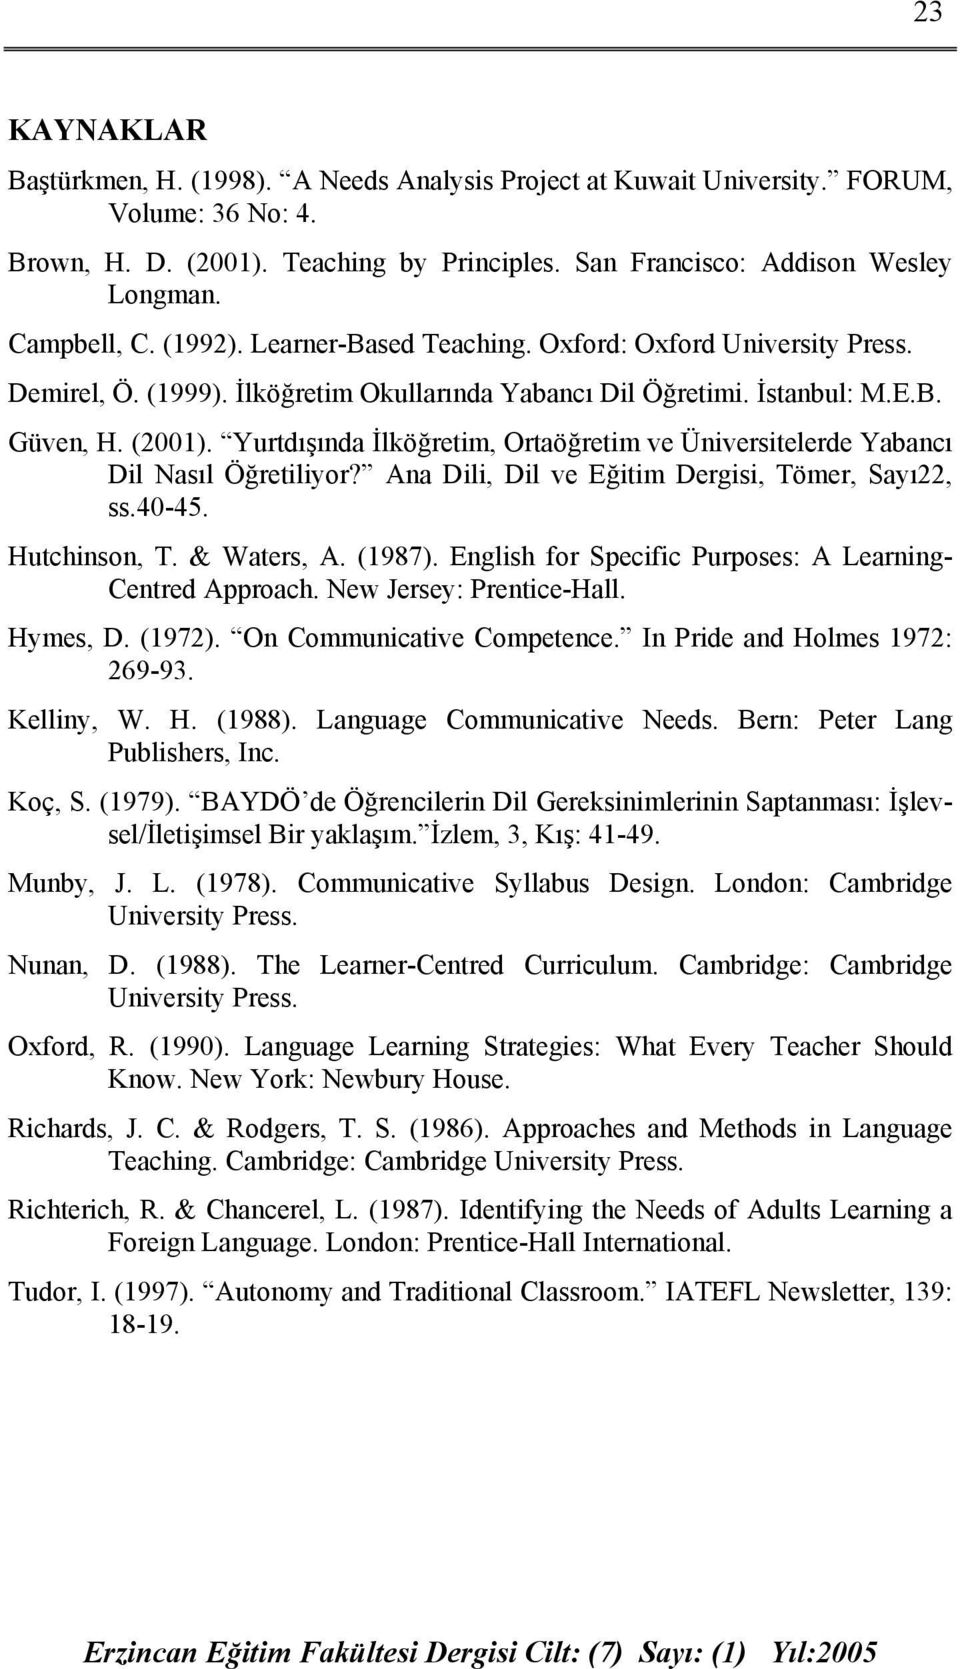 Yurtdışında İlköğretim, Ortaöğretim ve Üniversitelerde Yabancı Dil Nasıl Öğretiliyor? Ana Dili, Dil ve Eğitim Dergisi, Tömer, Sayı22, ss.40-45. Hutchinson, T. & Waters, A. (1987).